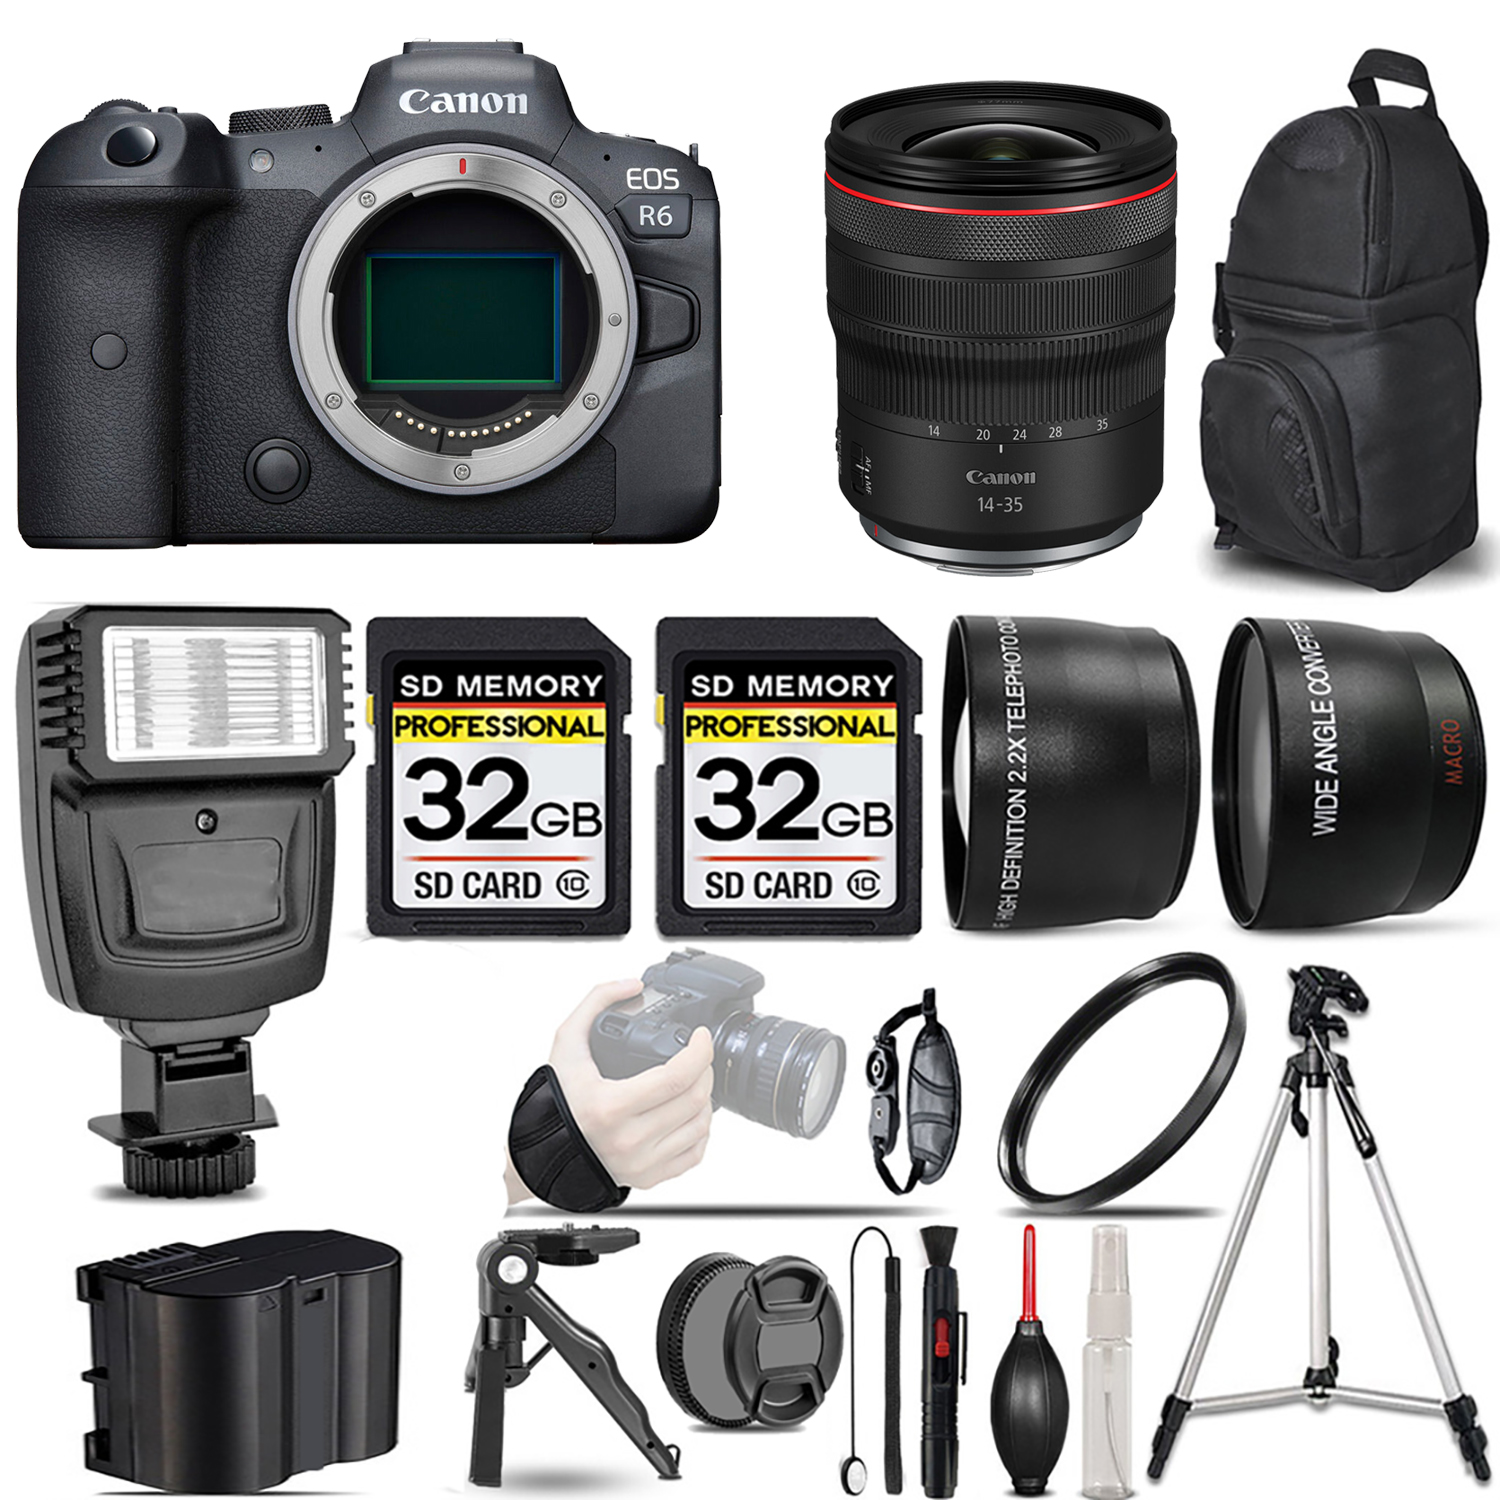 EOS R6 Mirrorless Camera + 14- 35mm f/4 L IS USM Lens + Flash + 64GB - Kit *FREE SHIPPING*